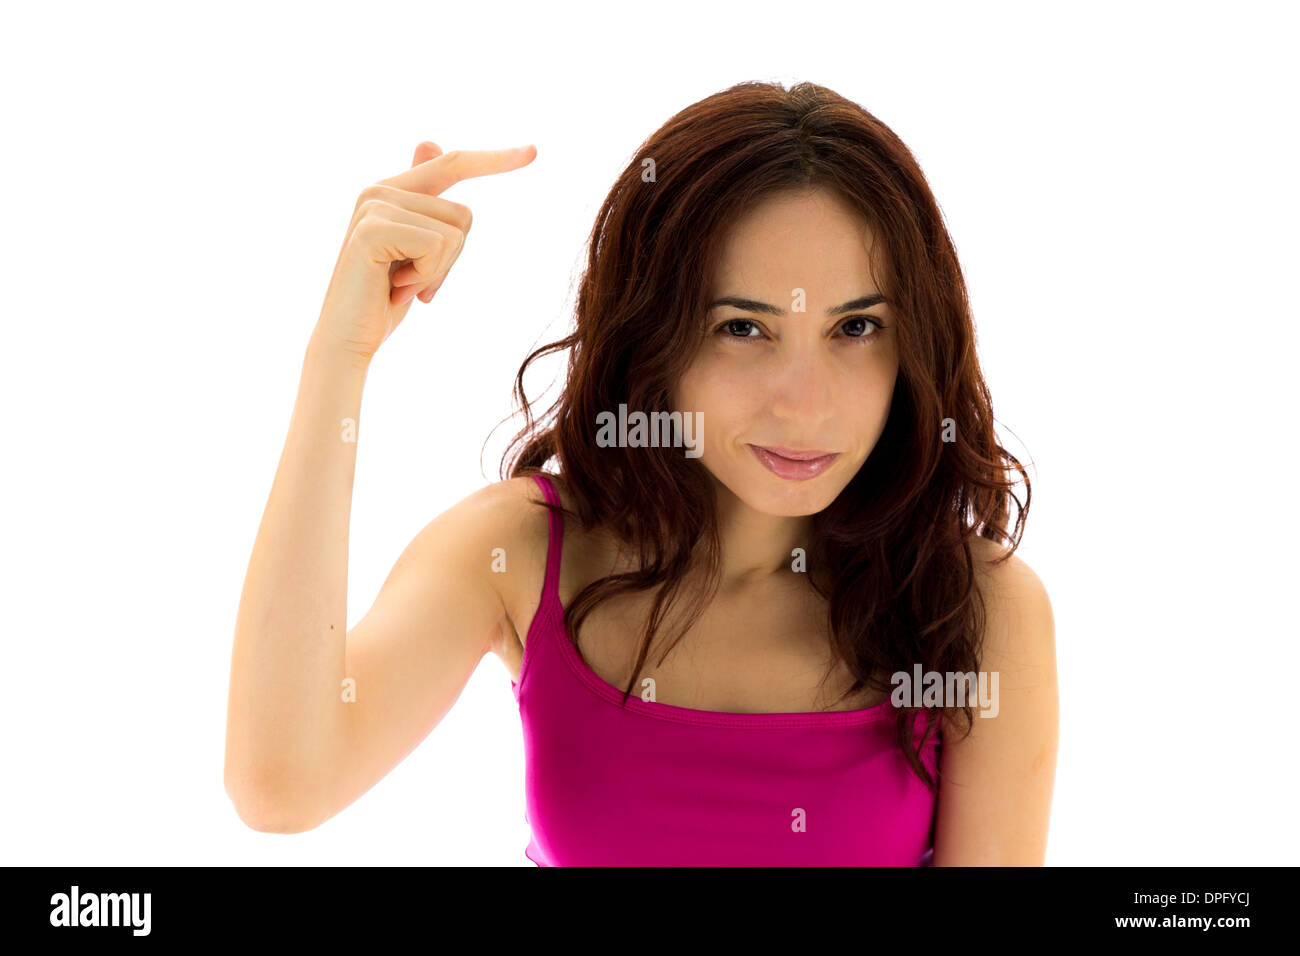 Junge Frau zeigt eine Geste, die darauf hinweist, dass jemand verrückt ist. (Serie mit dem gleichen Modell verfügbar) Stockfoto